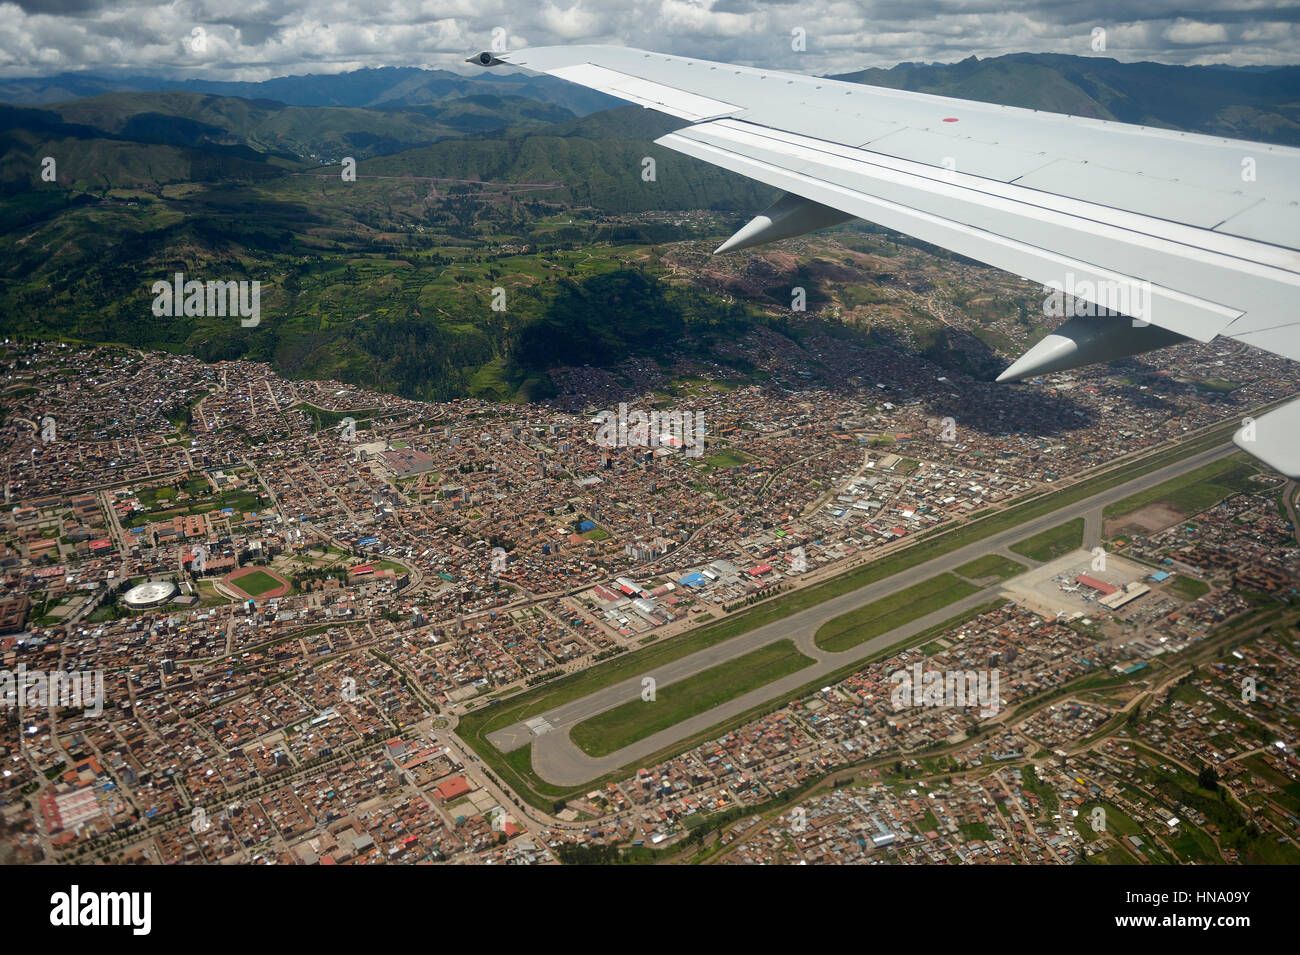 Paesaggio con Ande da aerei di atterraggio all'Aeroporto Aeropuerto Alejandro Velasco Astete, Provincia di Cusco, Perù Foto Stock